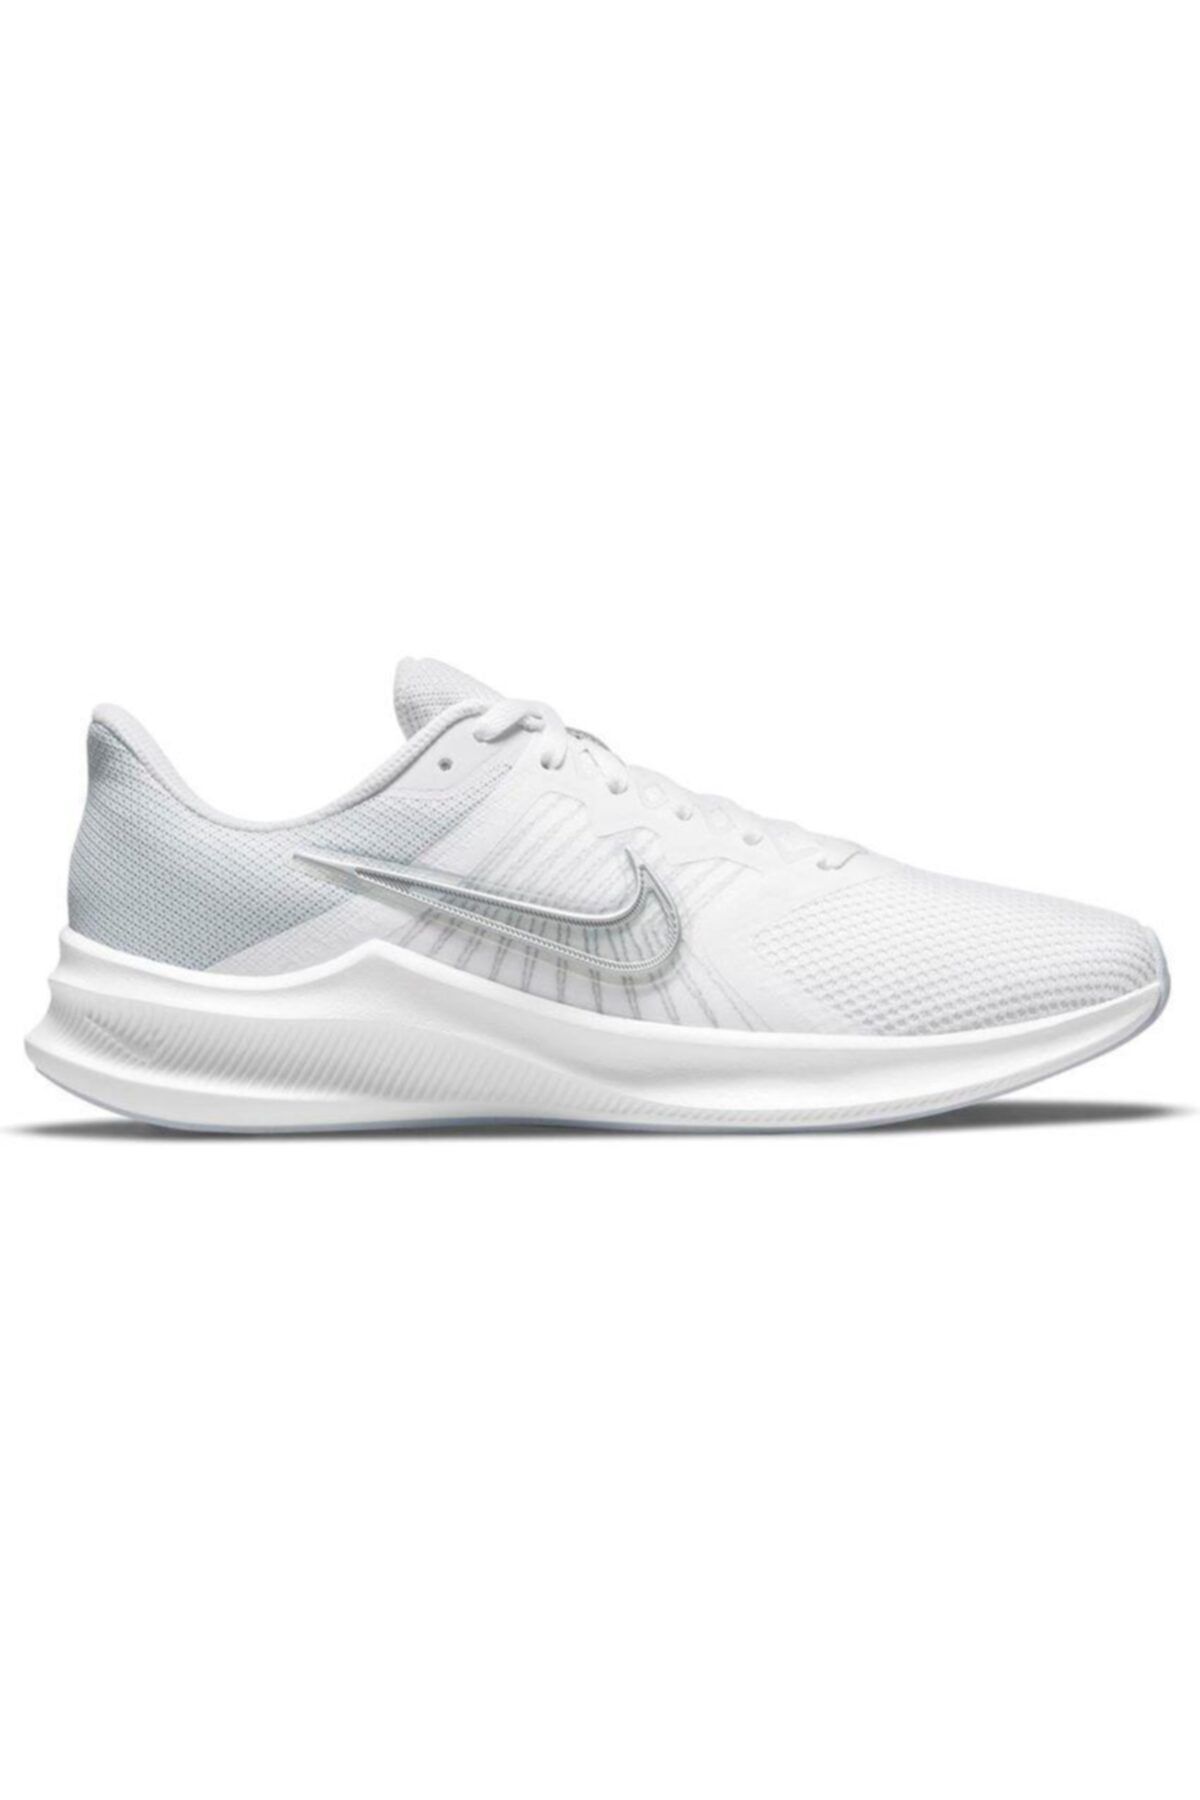 Nike Kadın Beyaz Koşu Ayakkabısı Cw3413-100